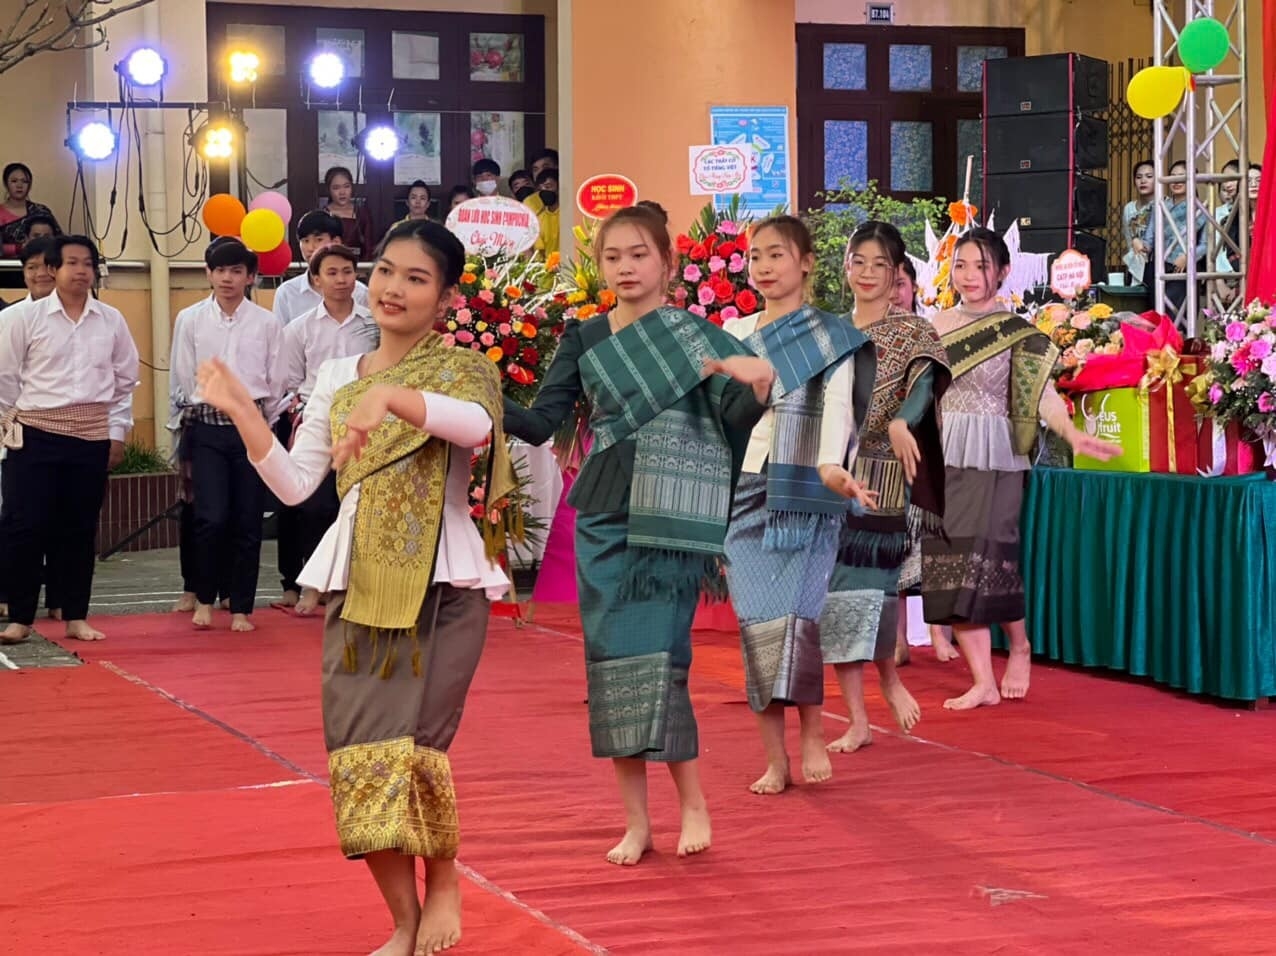 80号友谊学校的老挝留学生庆祝老挝传统新年。